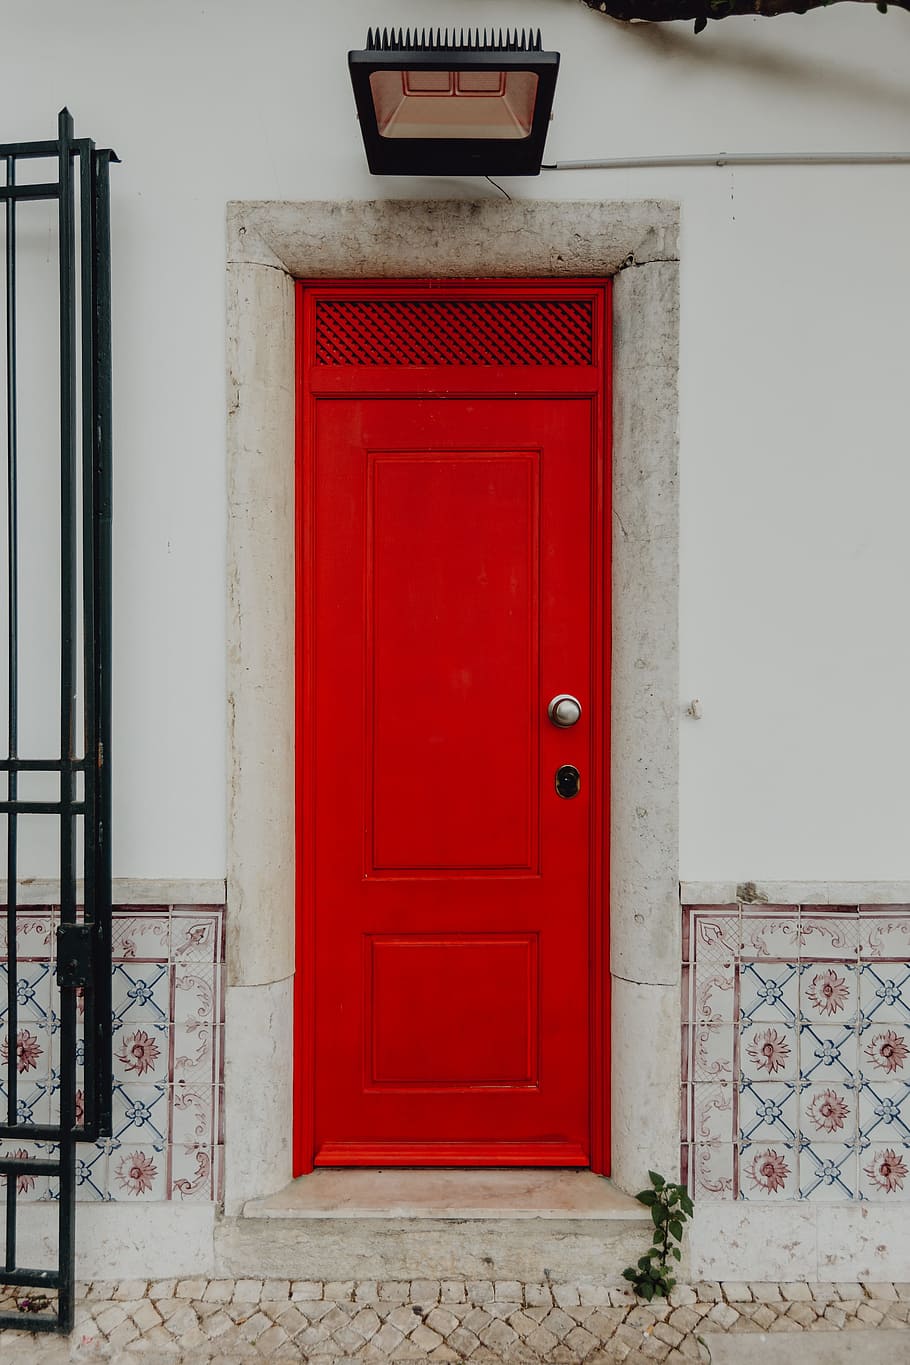 coloridos, de madeira, porta, fachada, típico, casa portuguesa, lisboa, arquitetura, cidade, europa